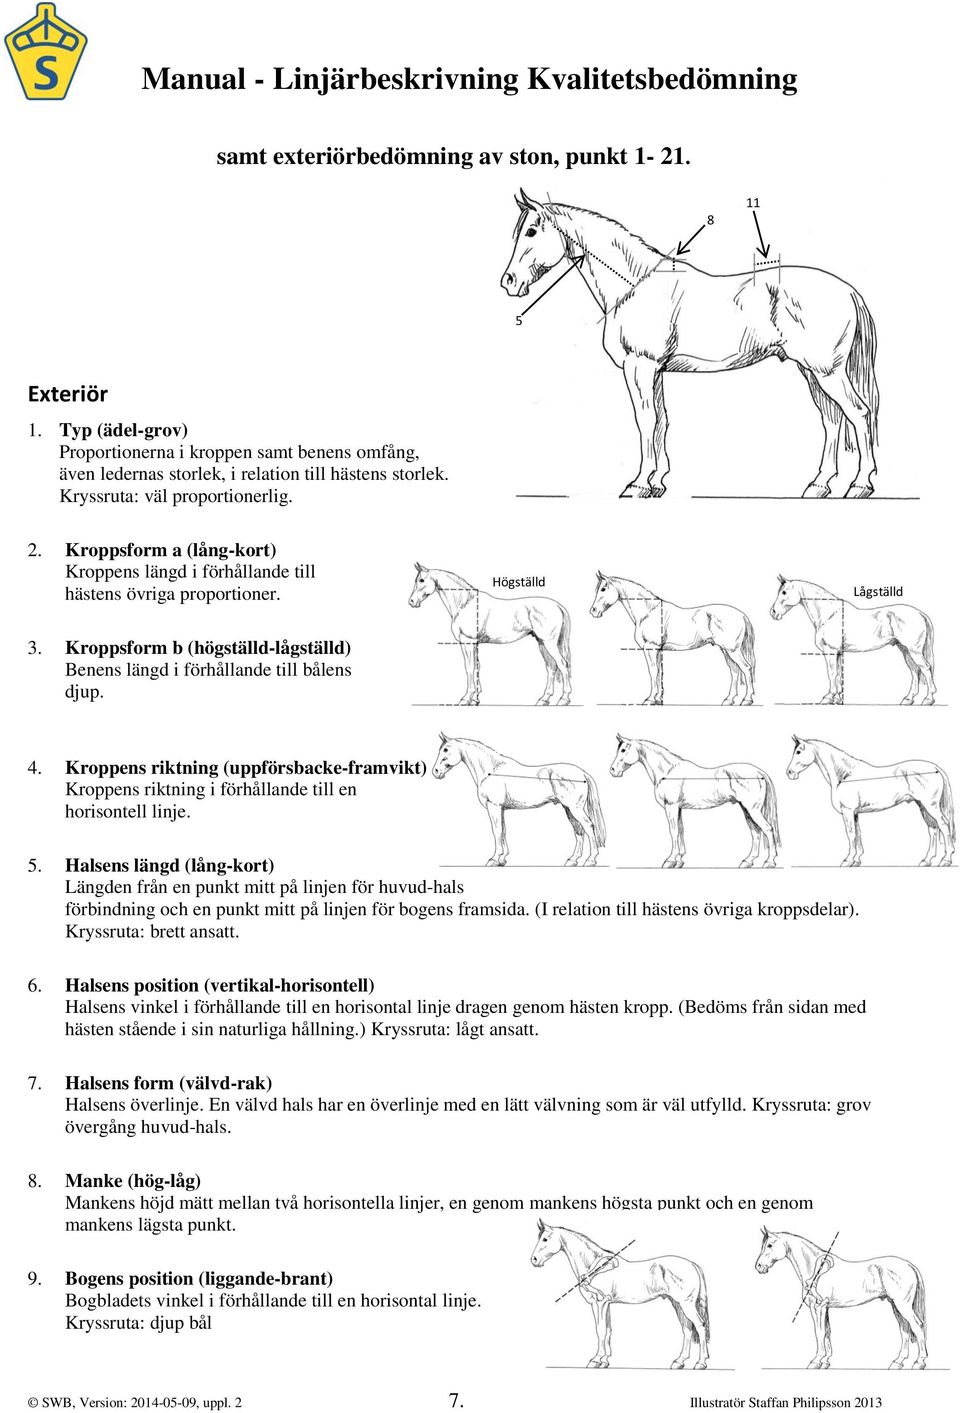 Kroppsform a (lång-kort) Kroppens längd i förhållande till hästens övriga proportioner. 3. Kroppsform b (högställd-lågställd) Benens längd i förhållande till bålens djup. Högställd 1. Lågställd 9. 4.